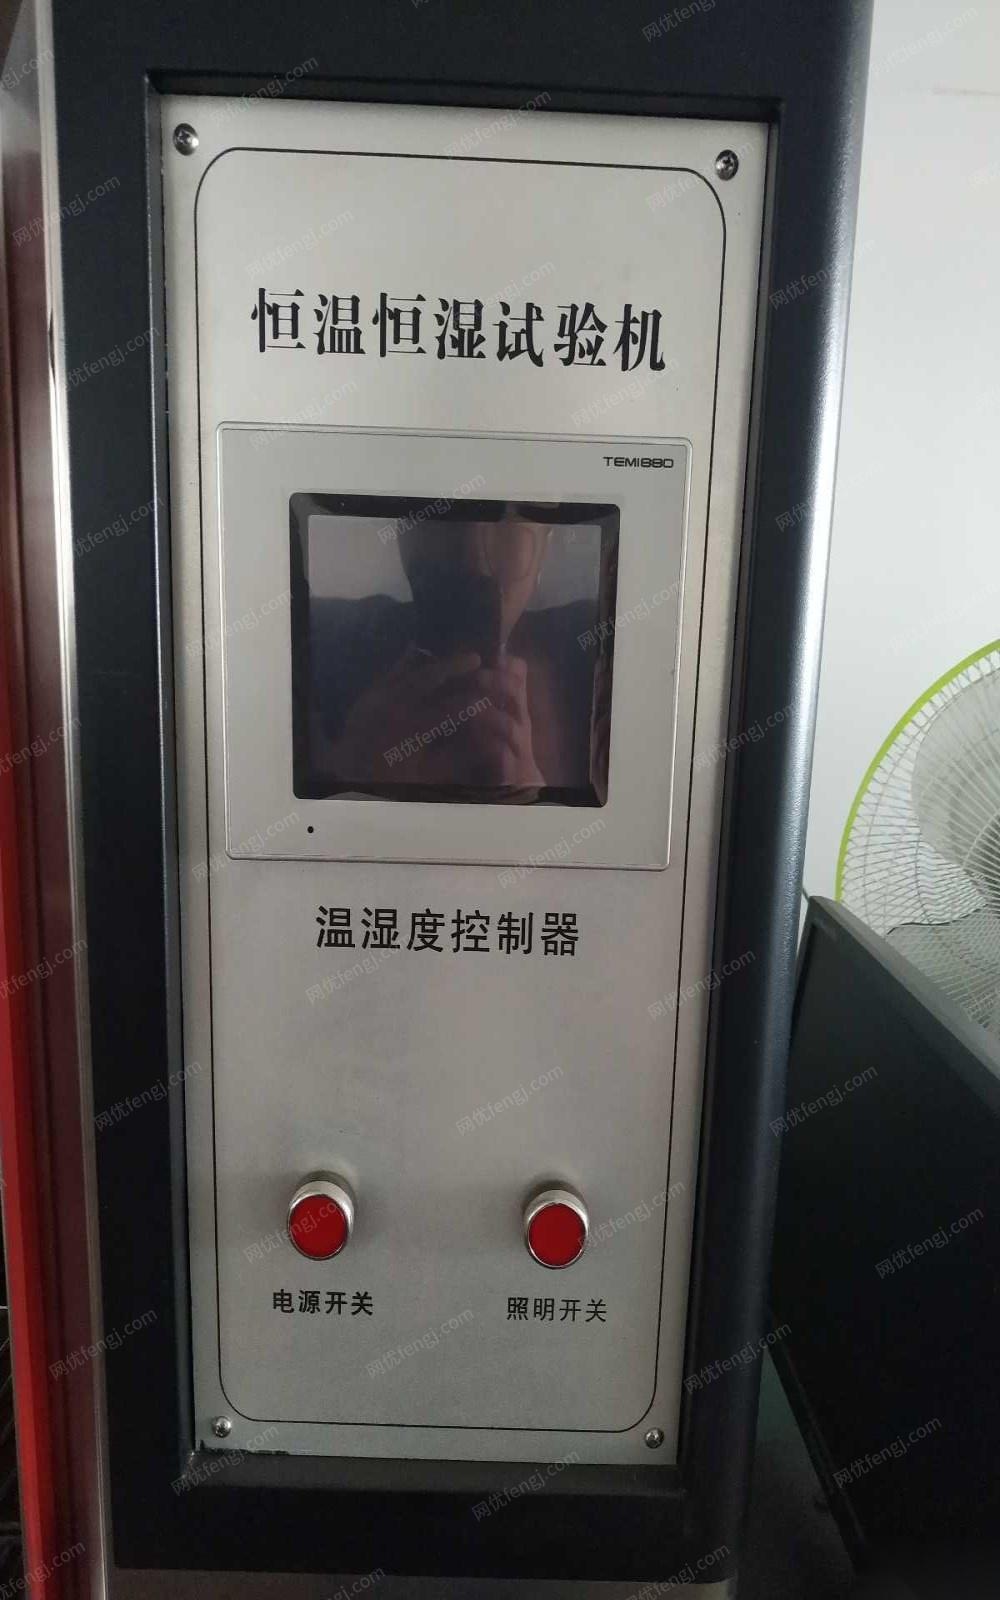 北京海淀区1台恒温恒湿试验机出售 出售价18000元